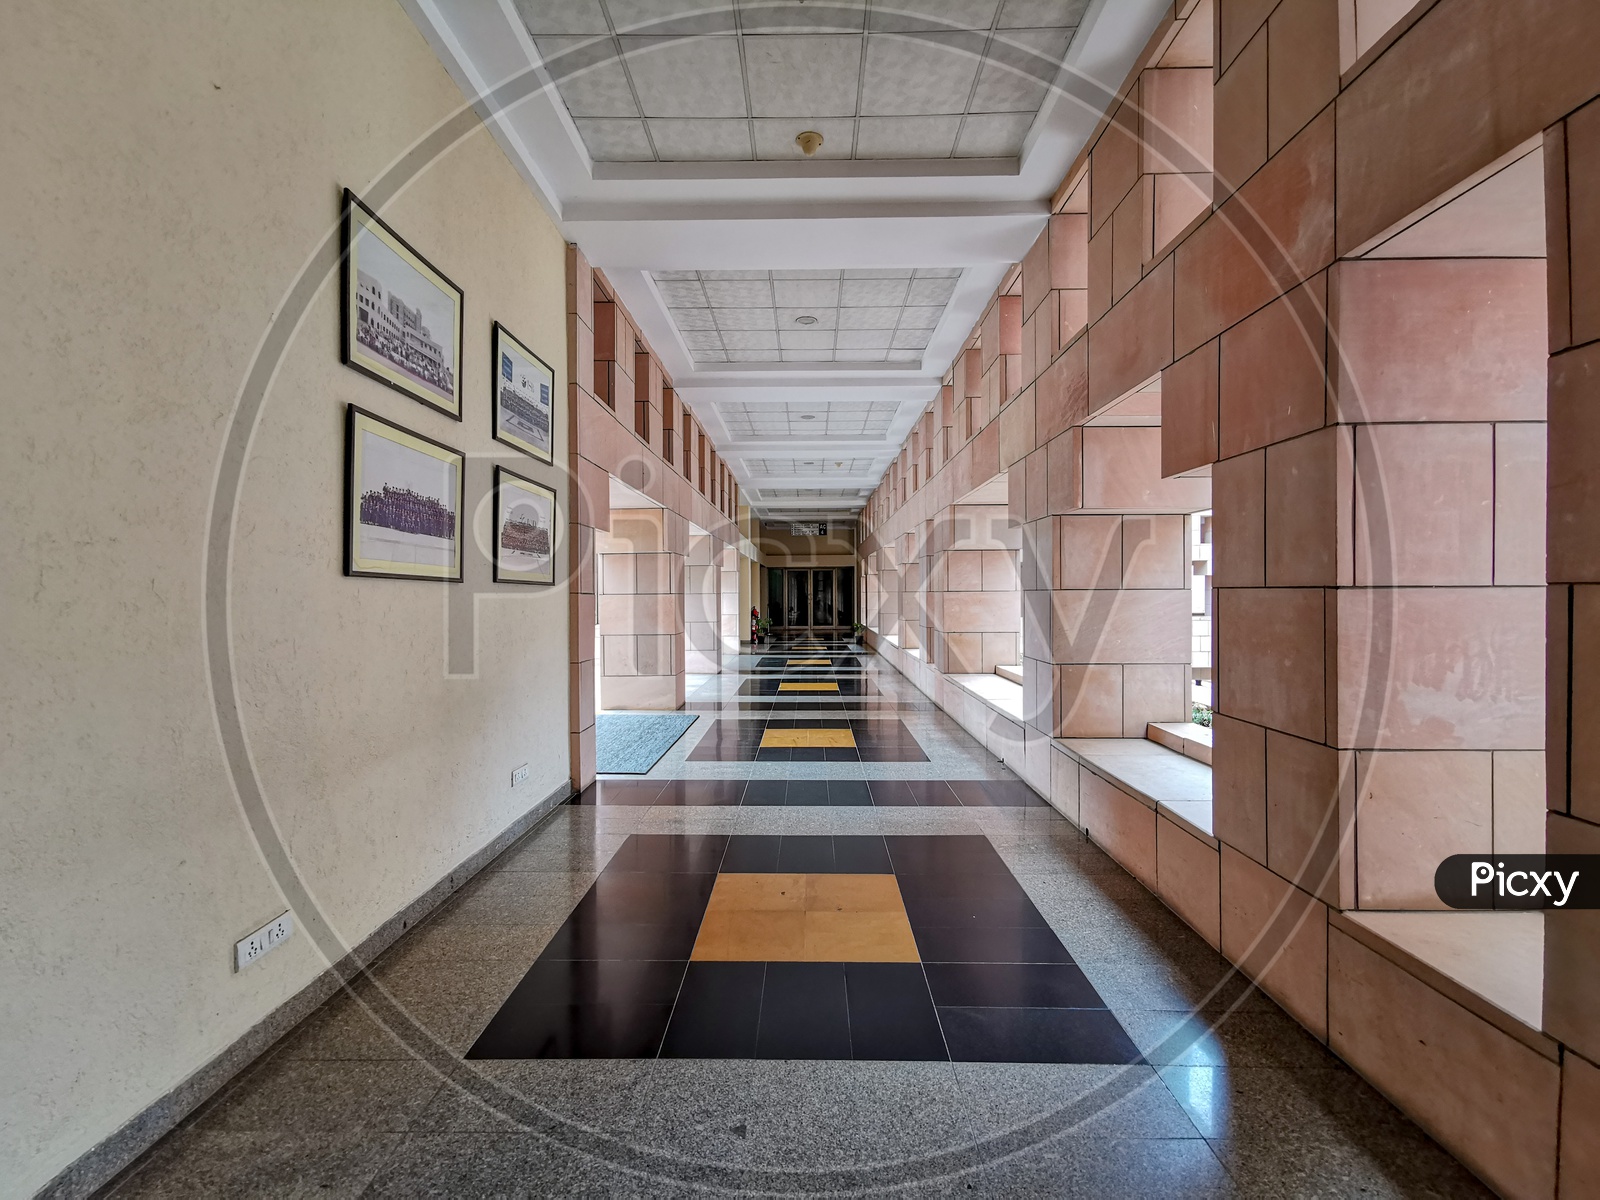 Corridors in ISB (Indian School of Business)